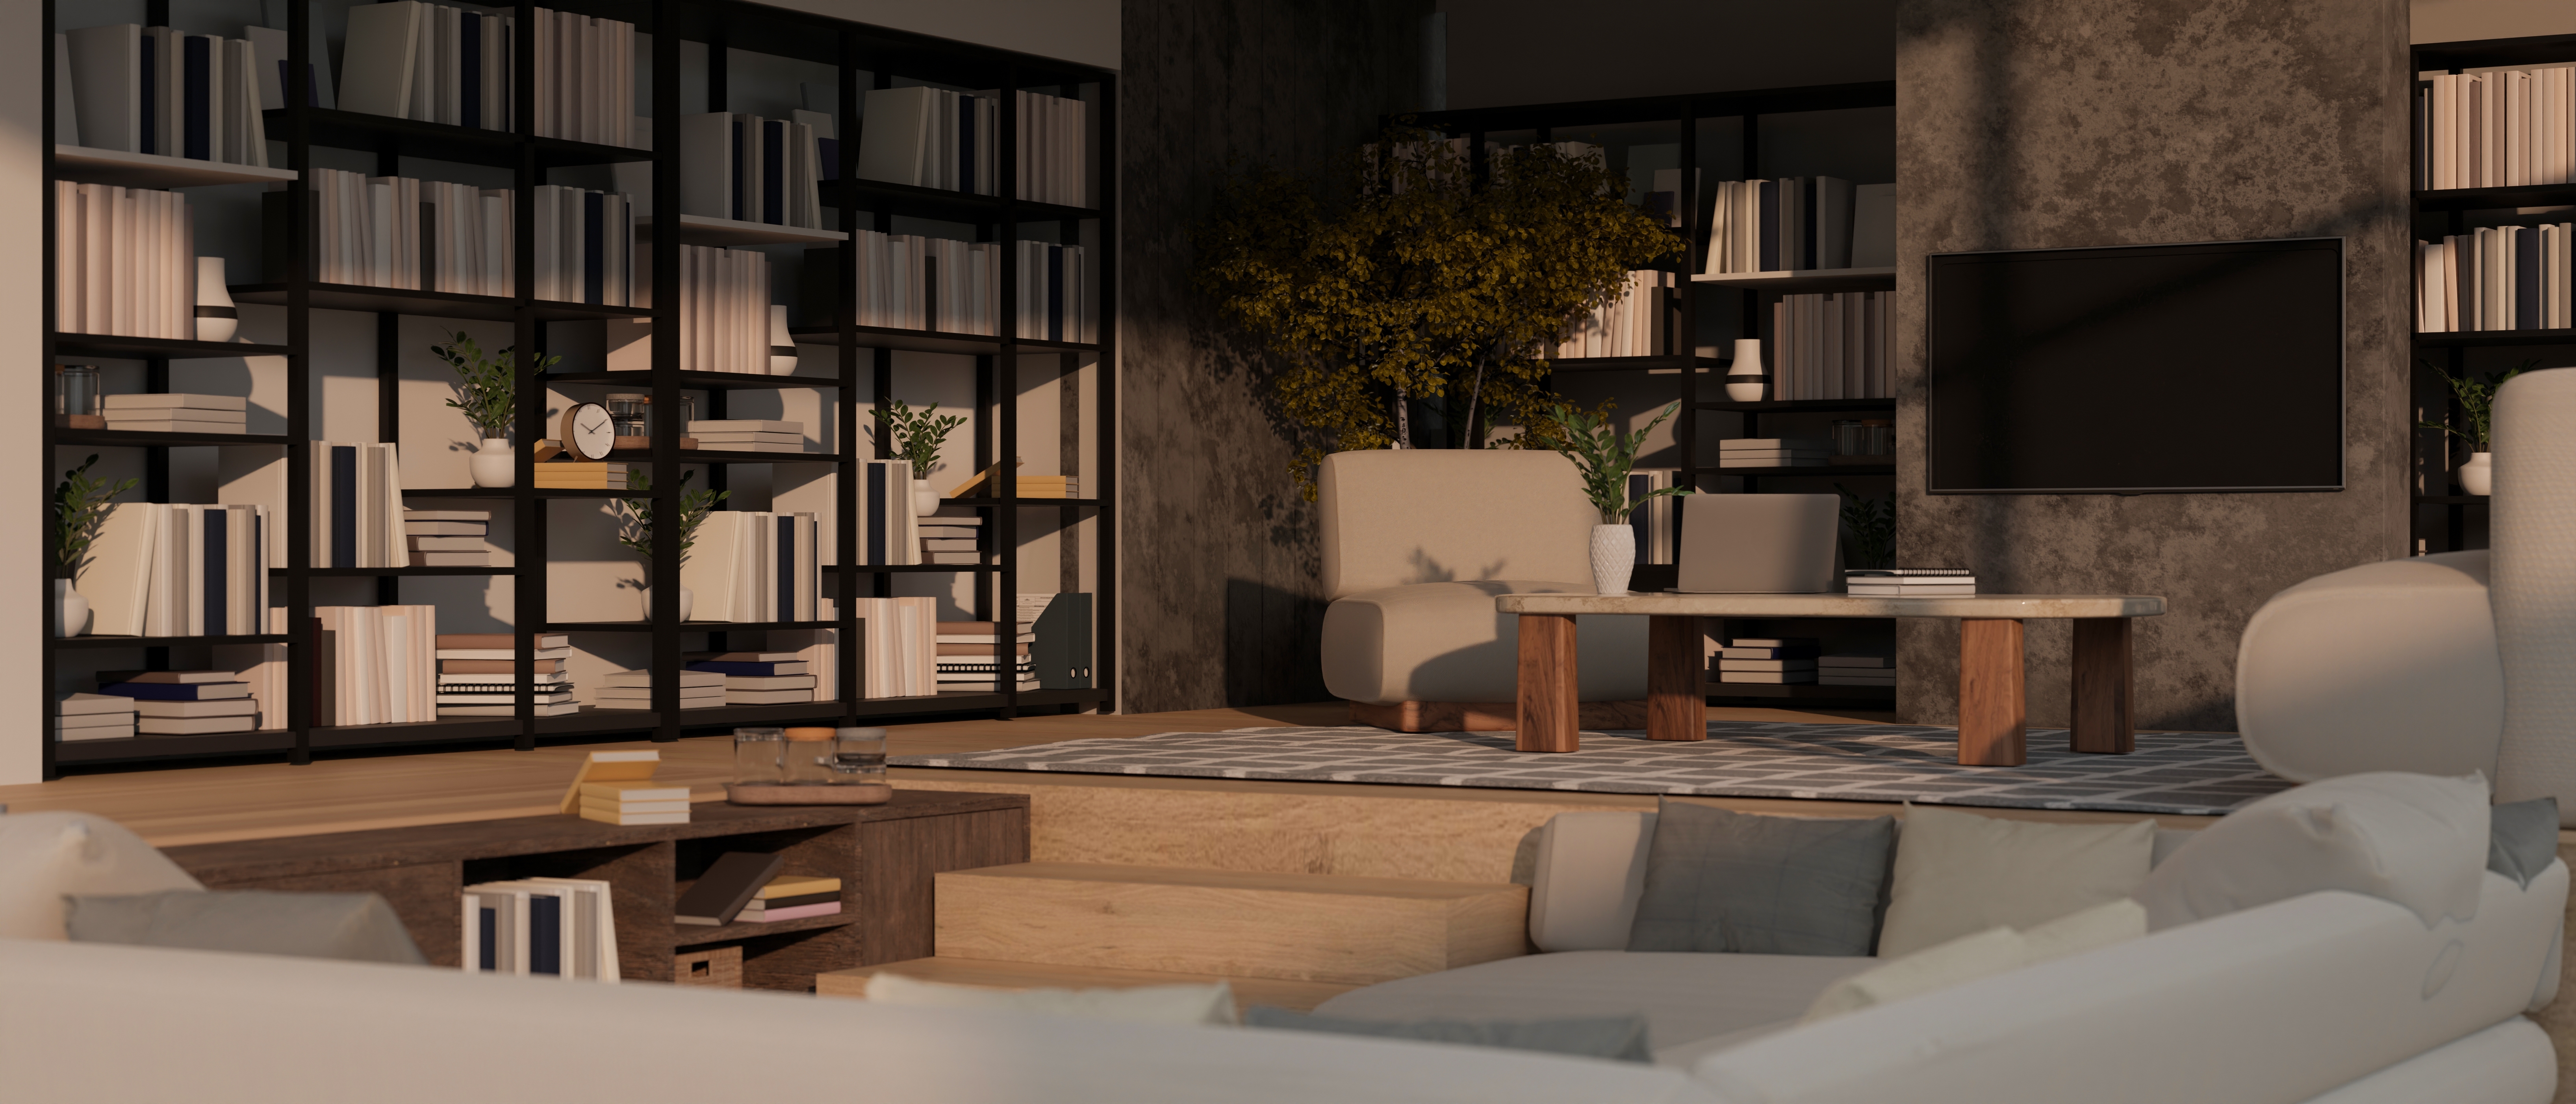 3D rendering of a sunken living room | Source: Shutterstock